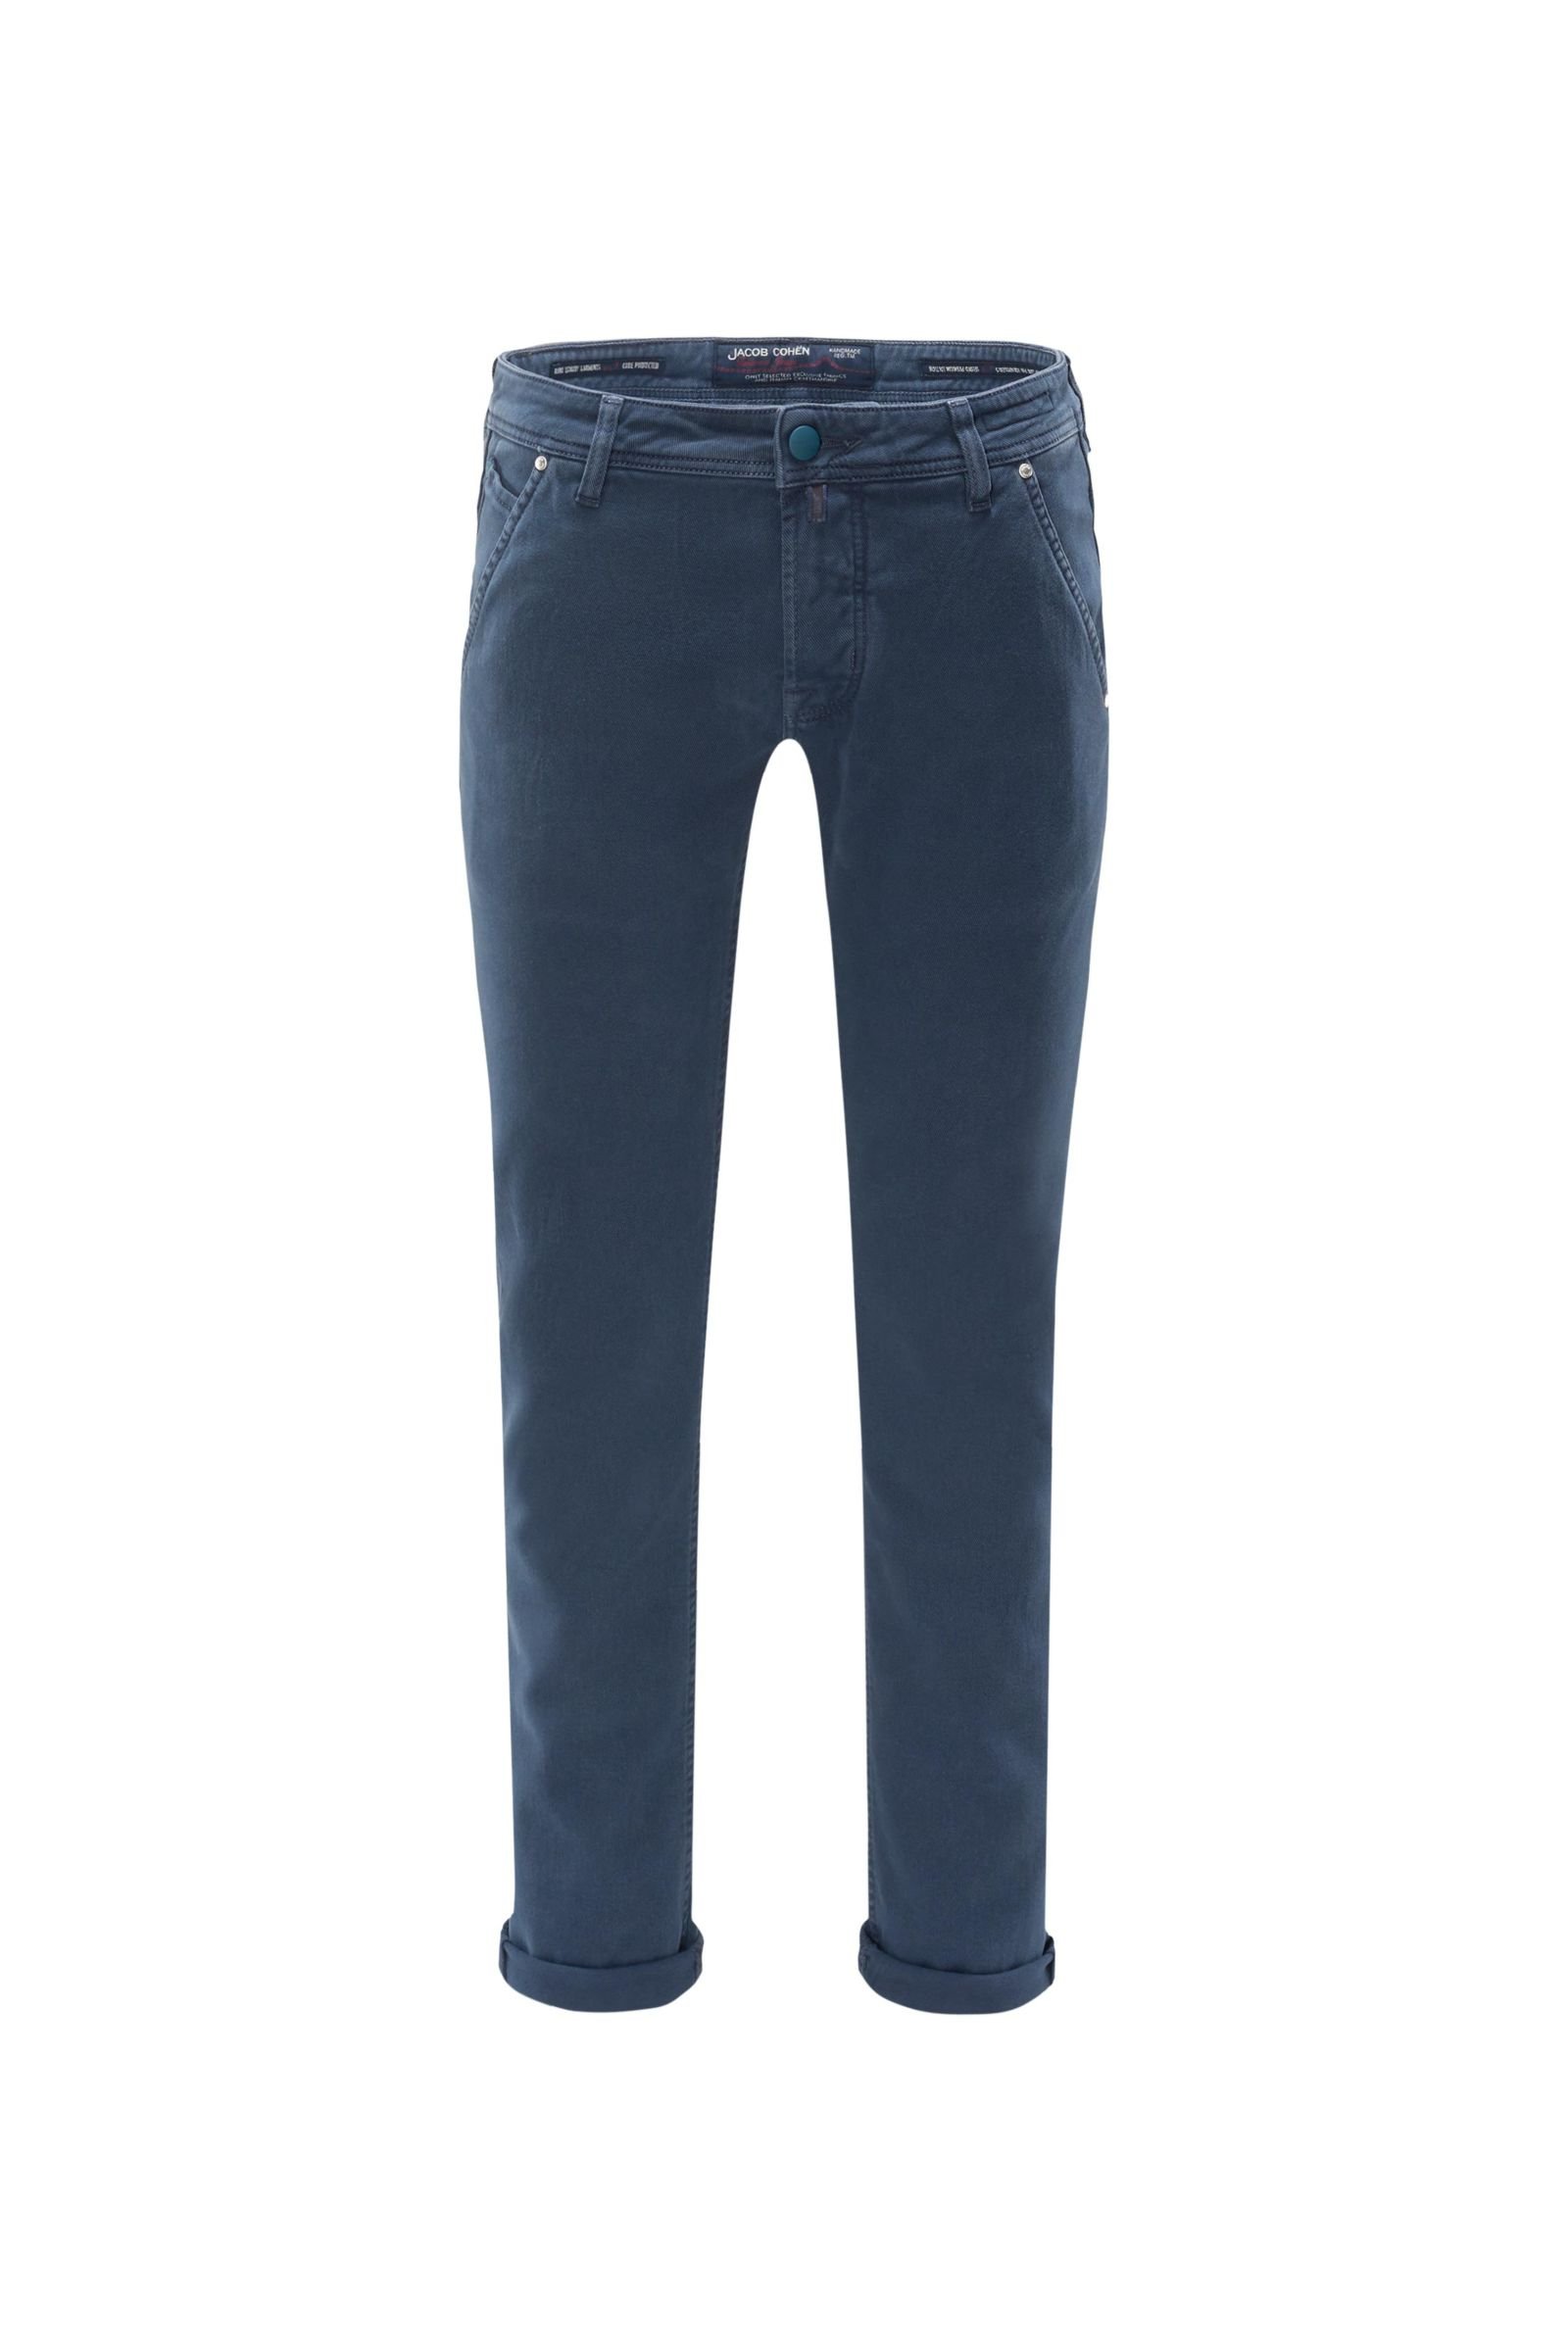 Cotton trousers 'J613 Comfort Vintage Slim Fit' navy